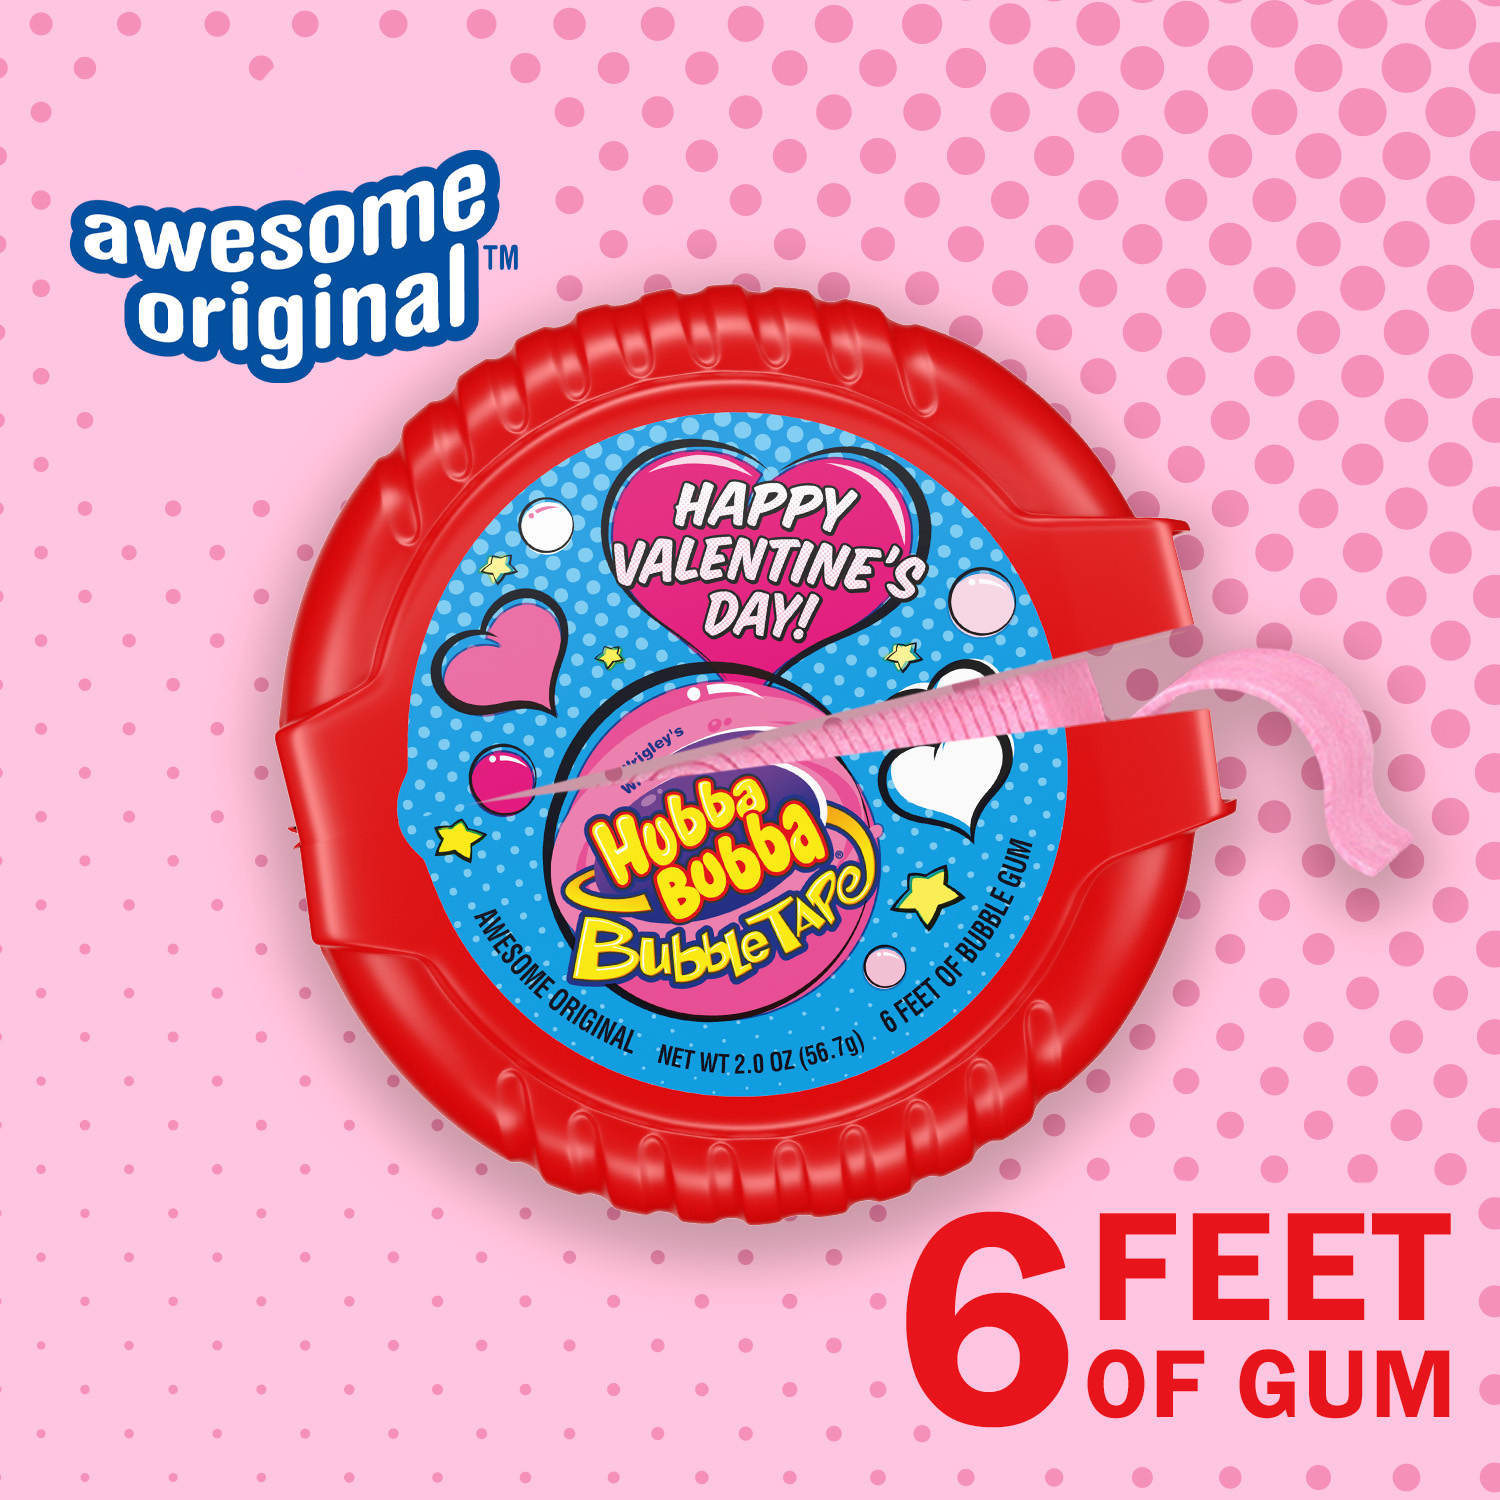 Hubba Bubba Bubble Tape Chewing Gum, Valentine's Bubble Gum - 2 oz - image 2 of 9